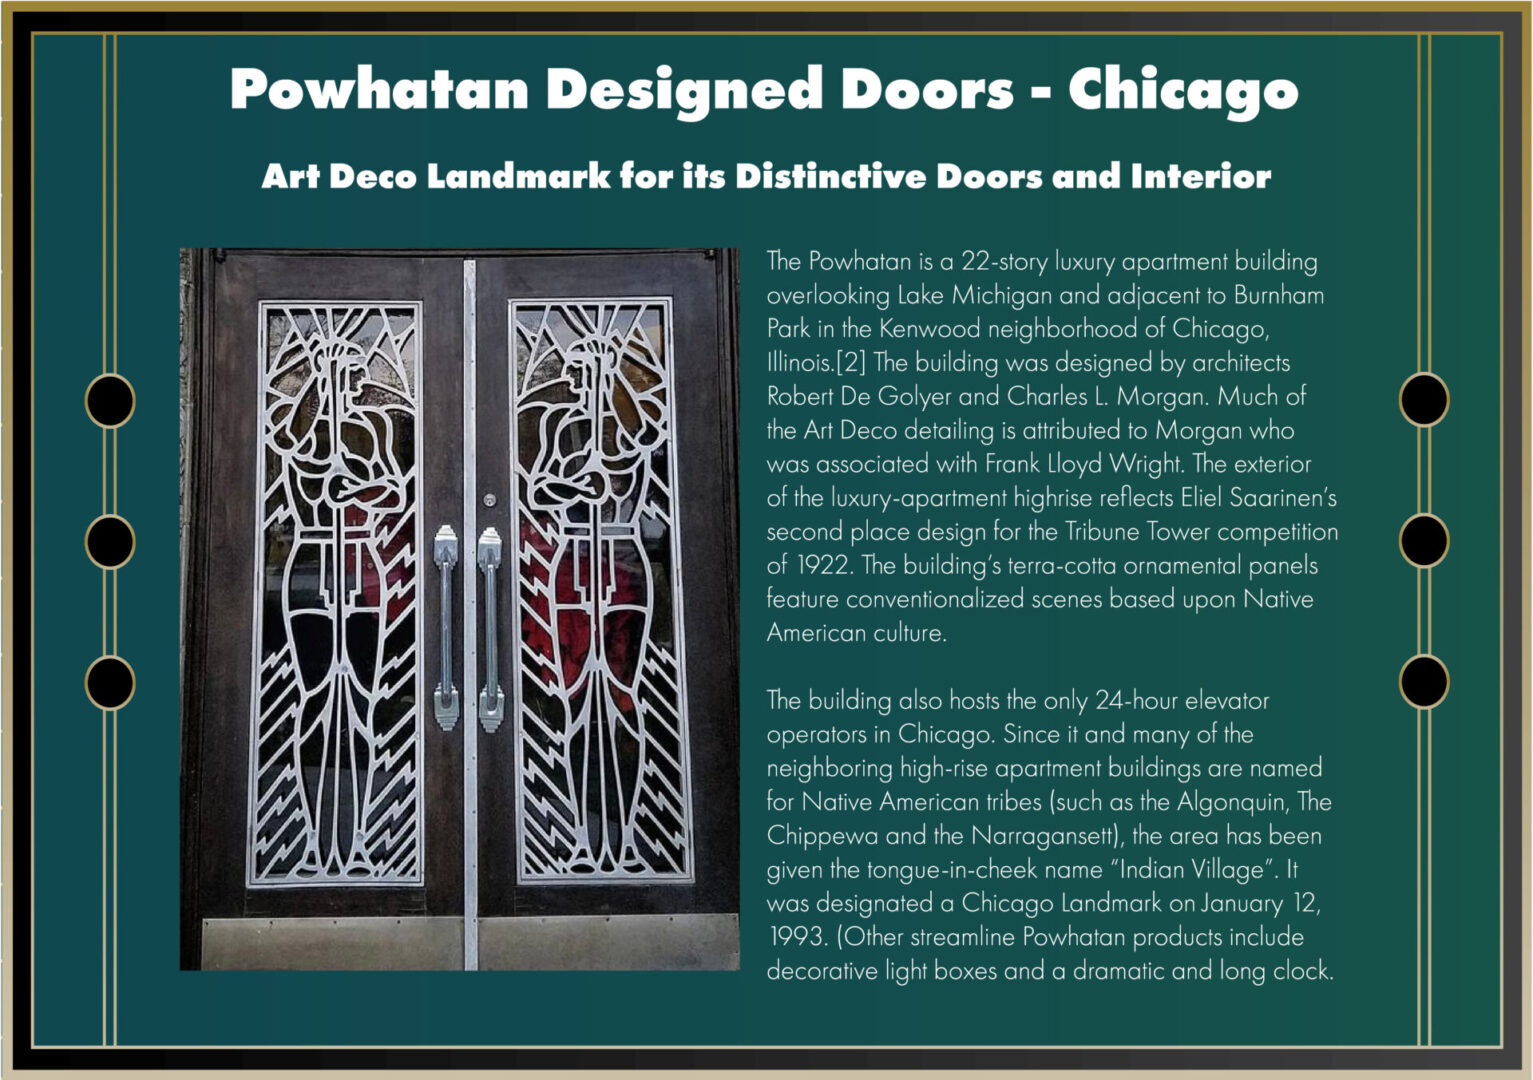 Powhatan Designed Doors in Chicago